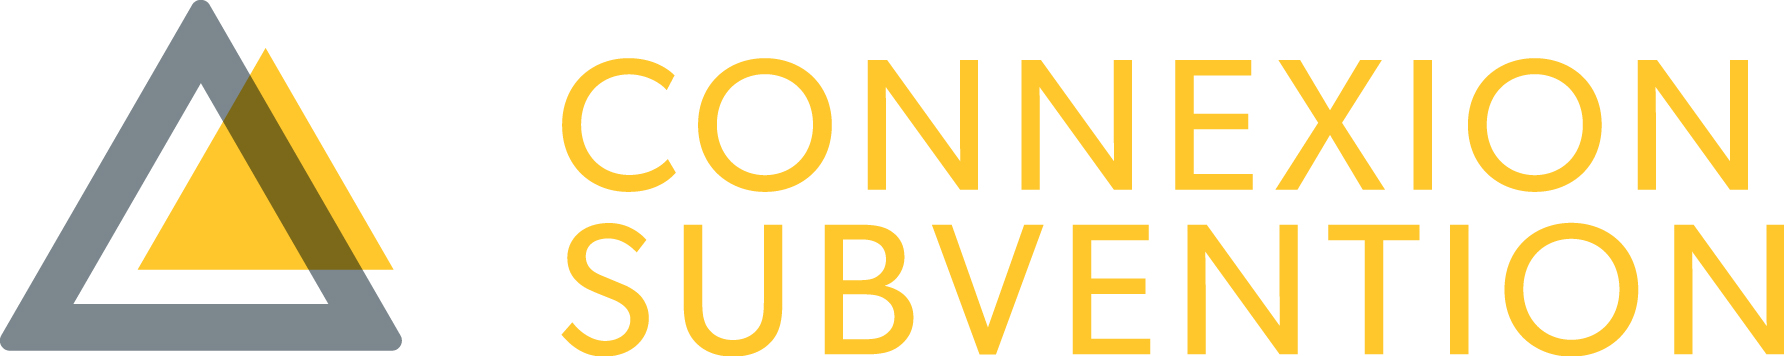 Logo connexion subvention colour